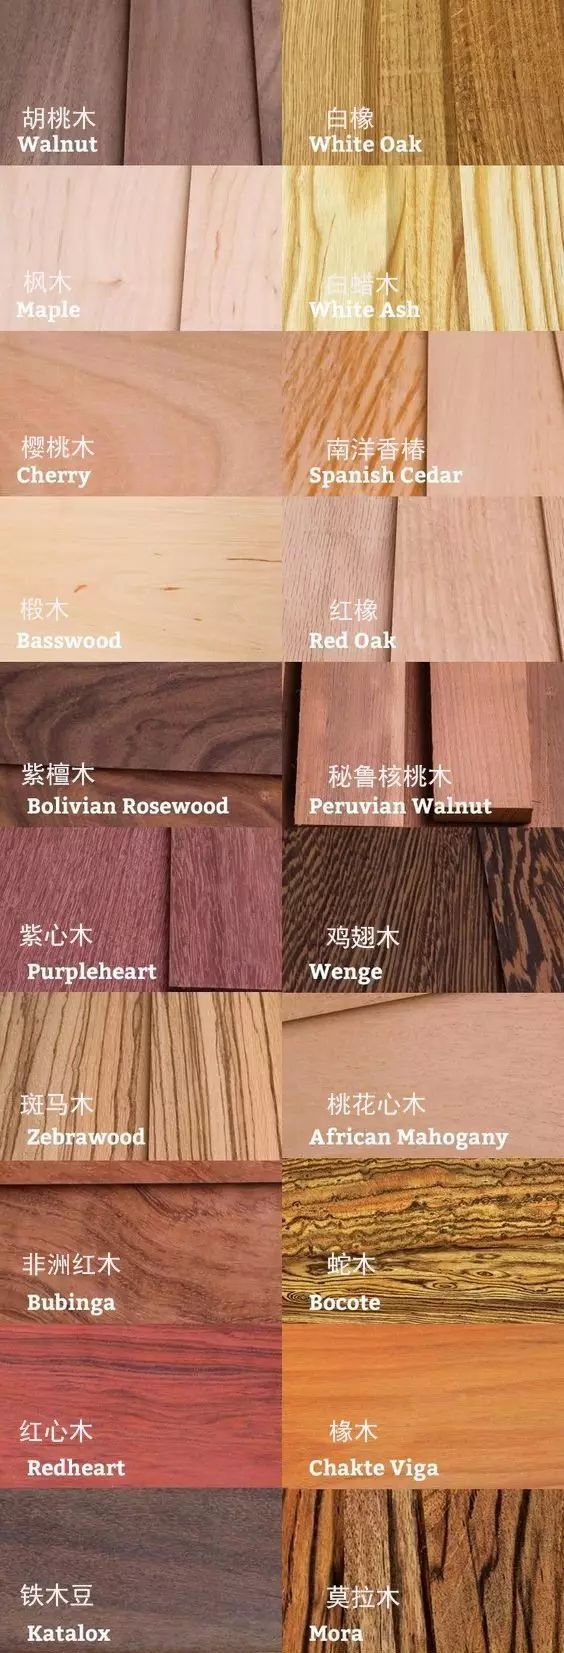 制造家具为何要干燥木材,怎样才算是好木材!